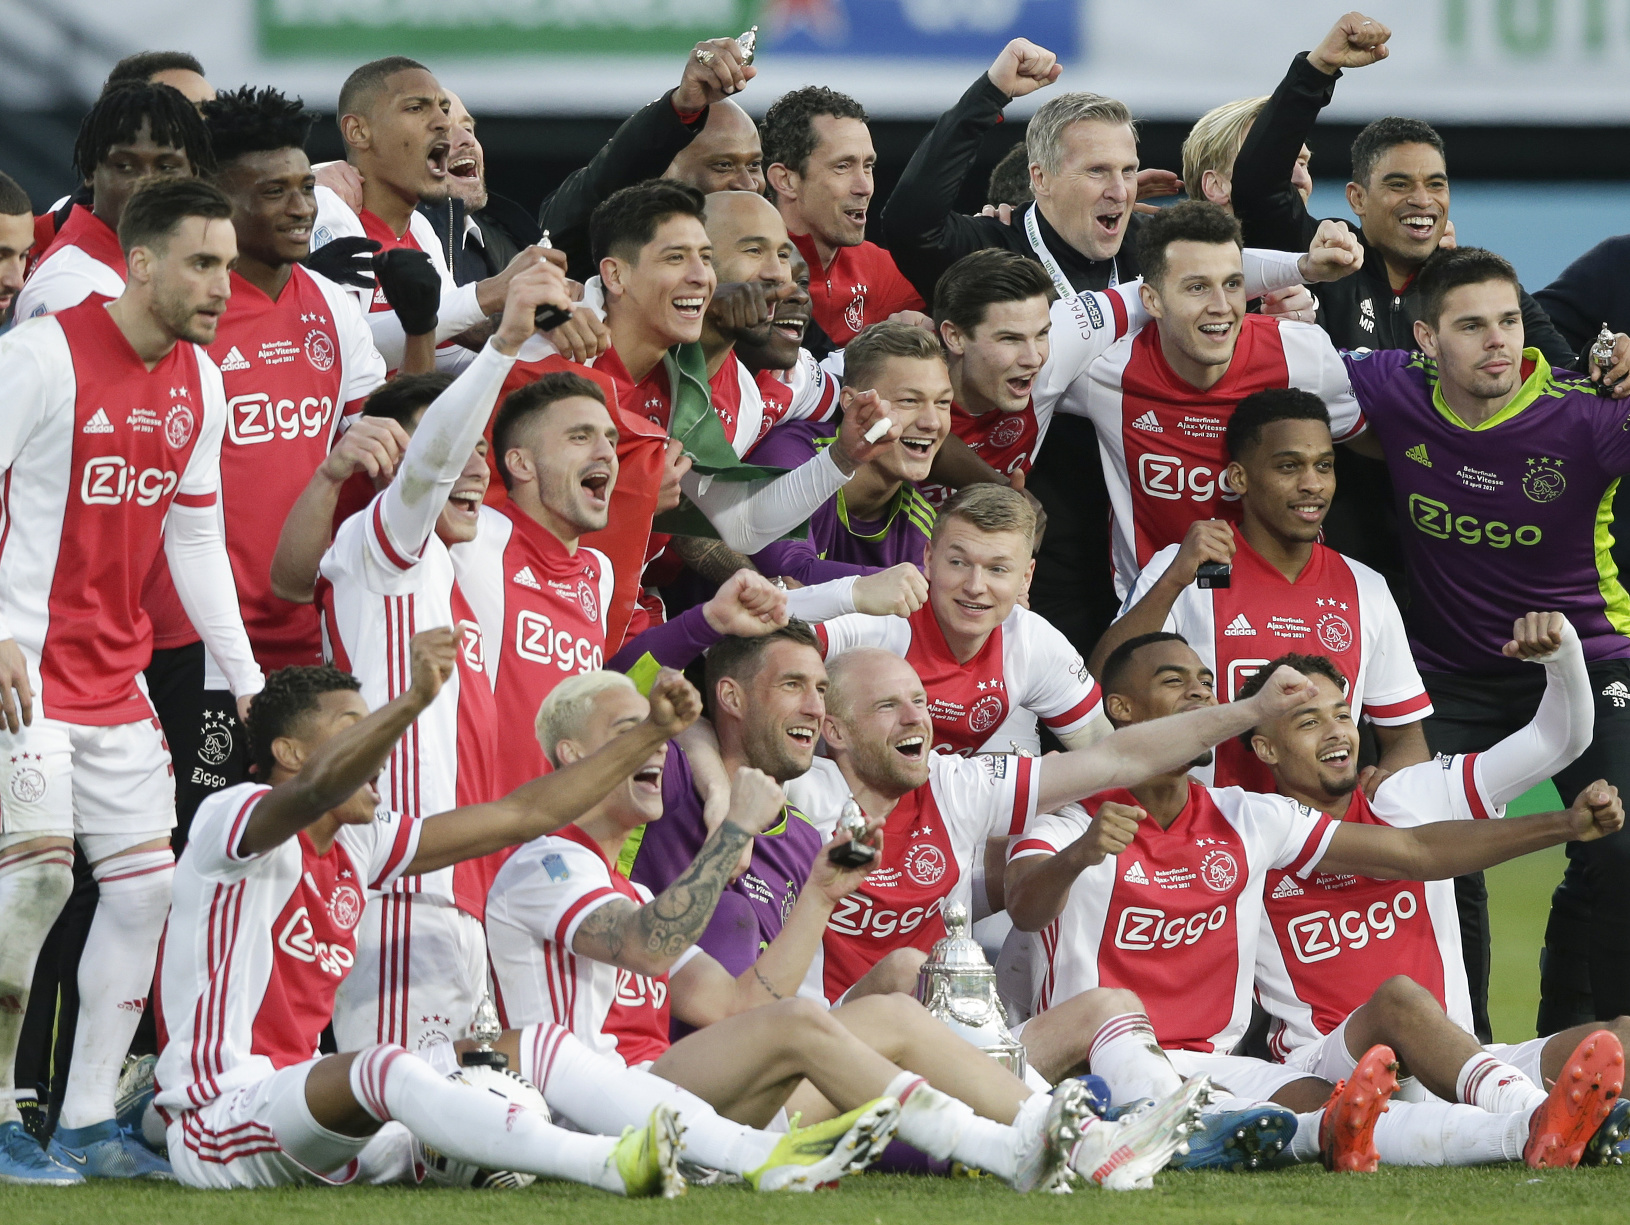 Futbalisti Ajaxu Amsterdam pózujú